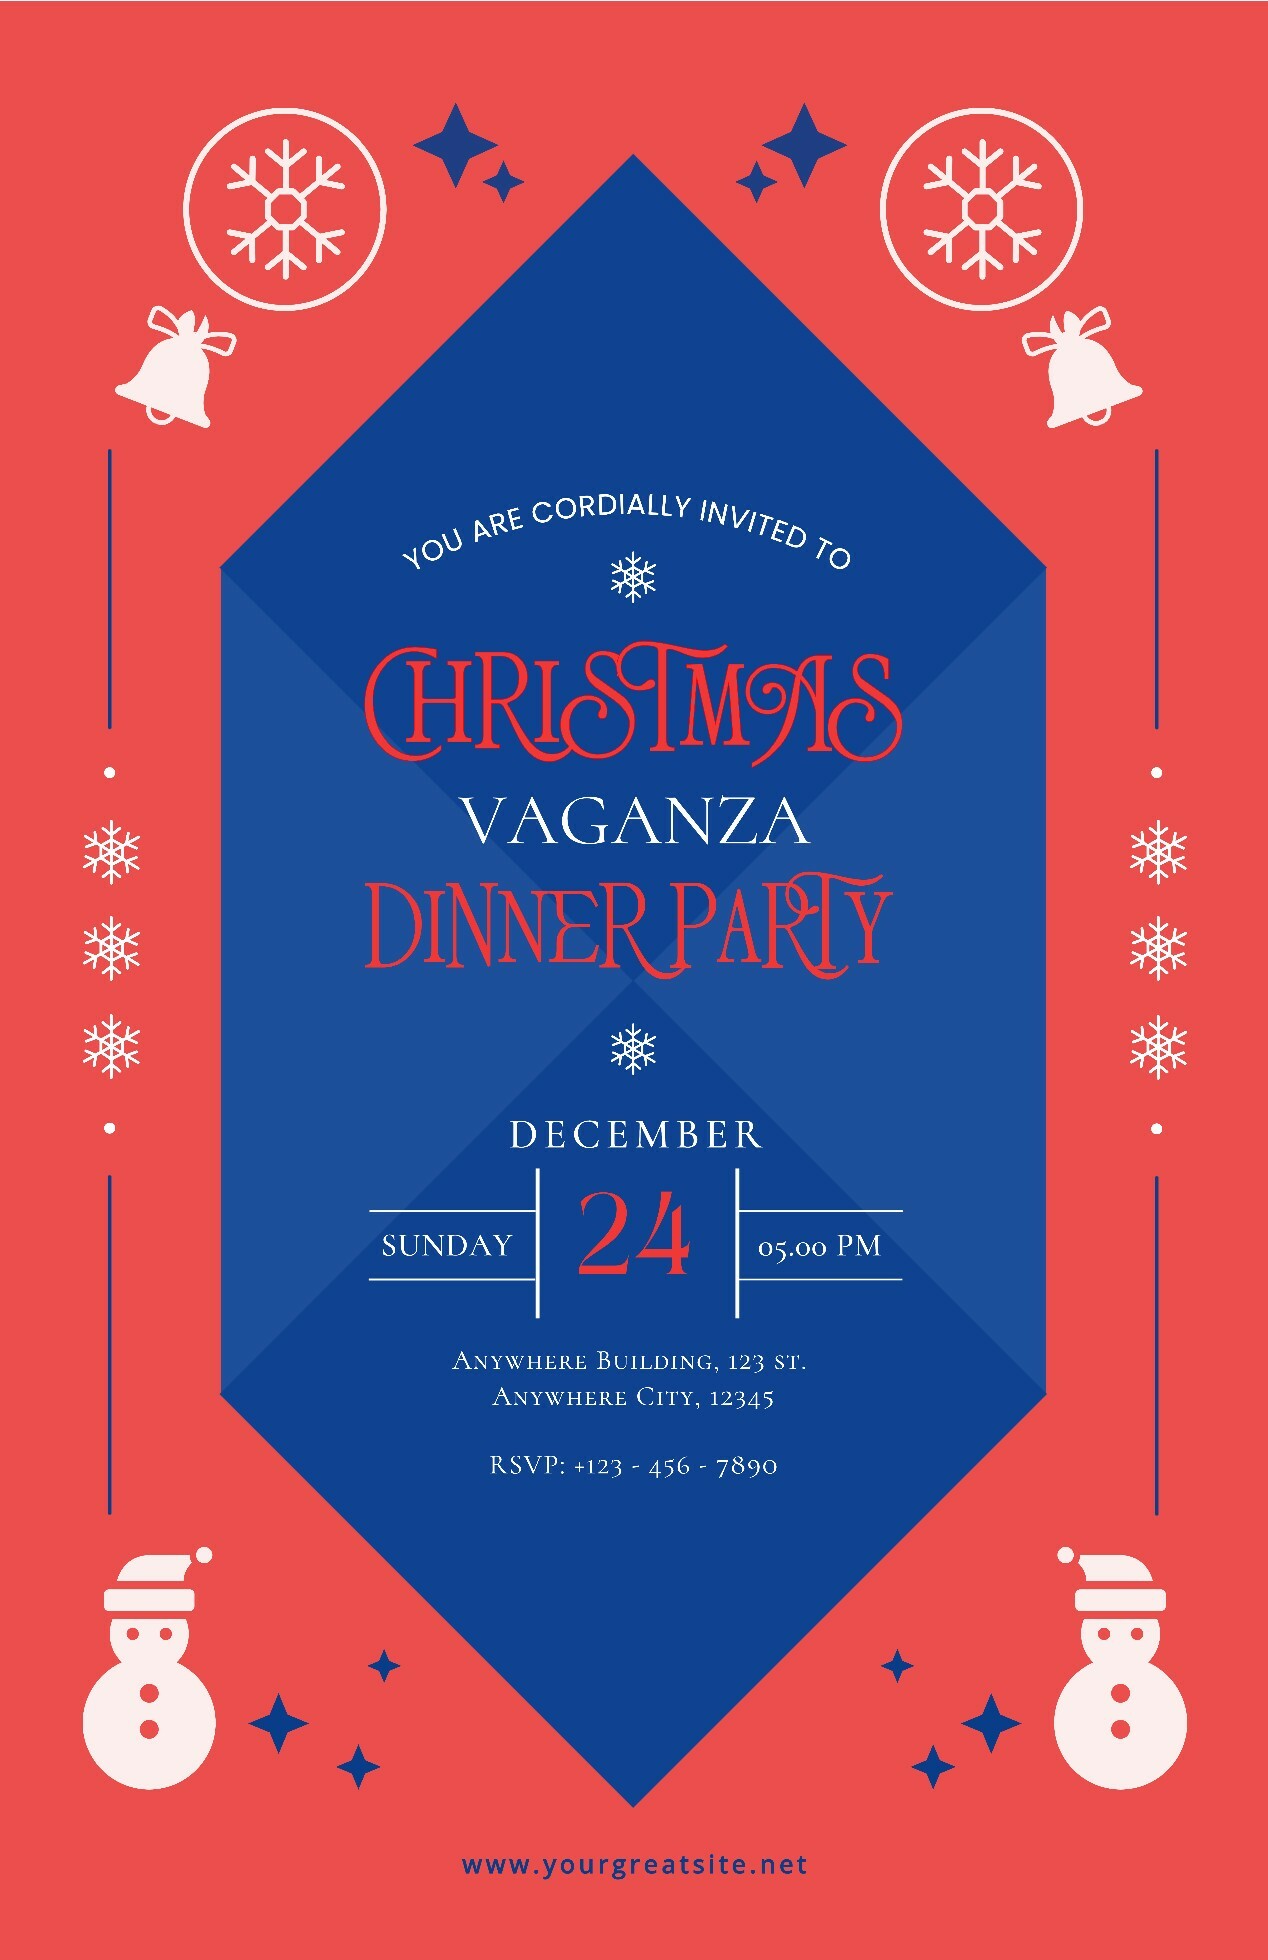 Christmas Vaganza Party Poster